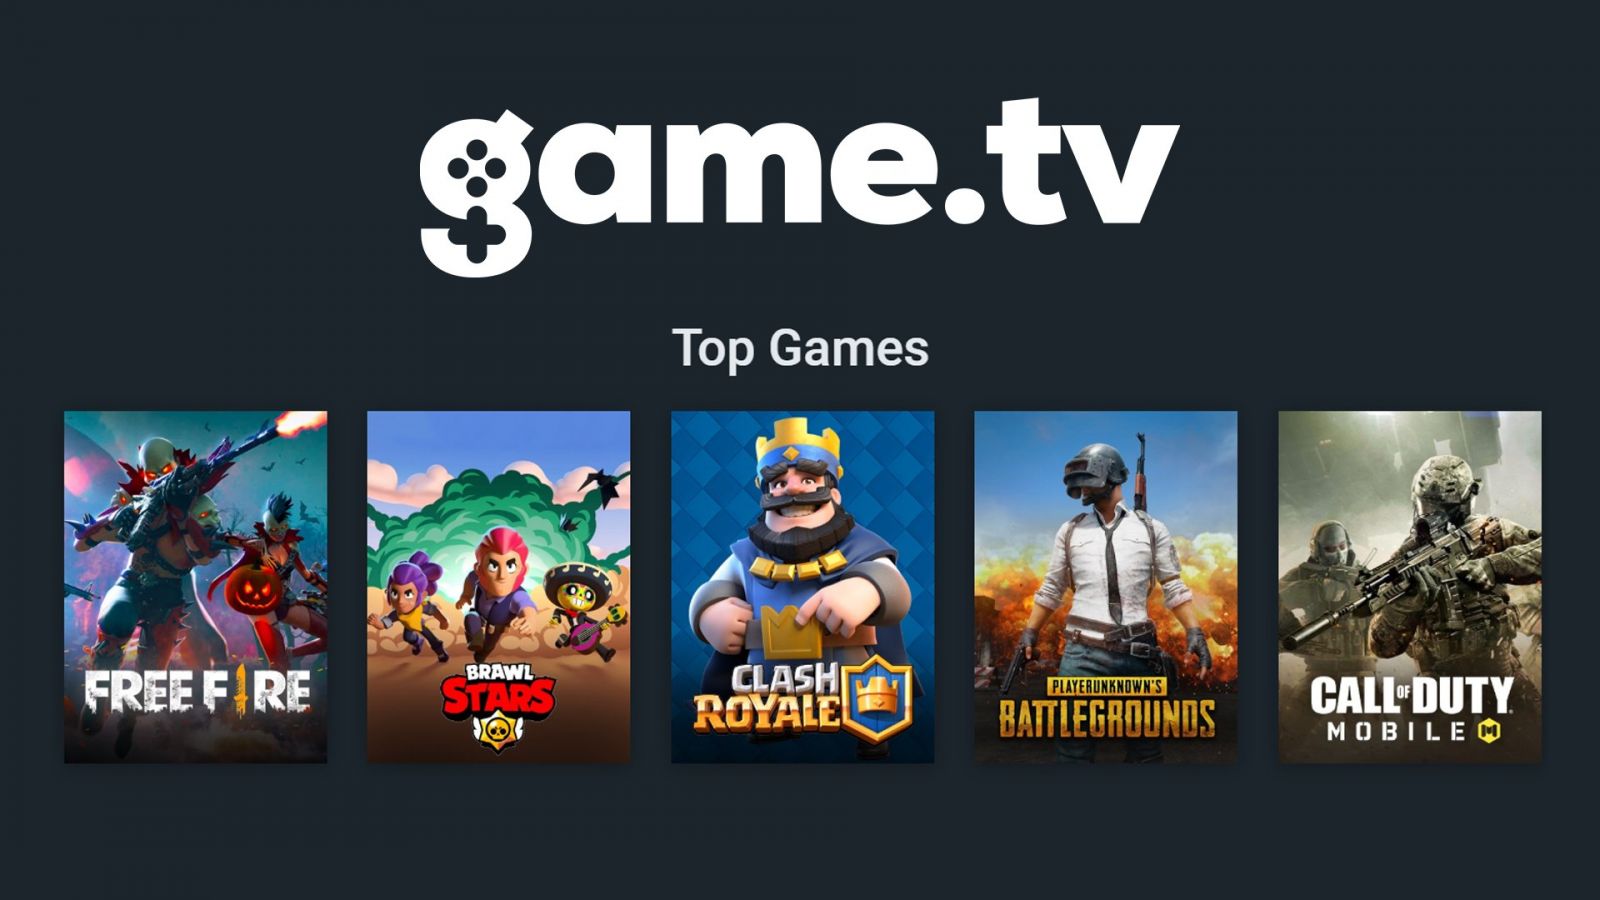 Top games 